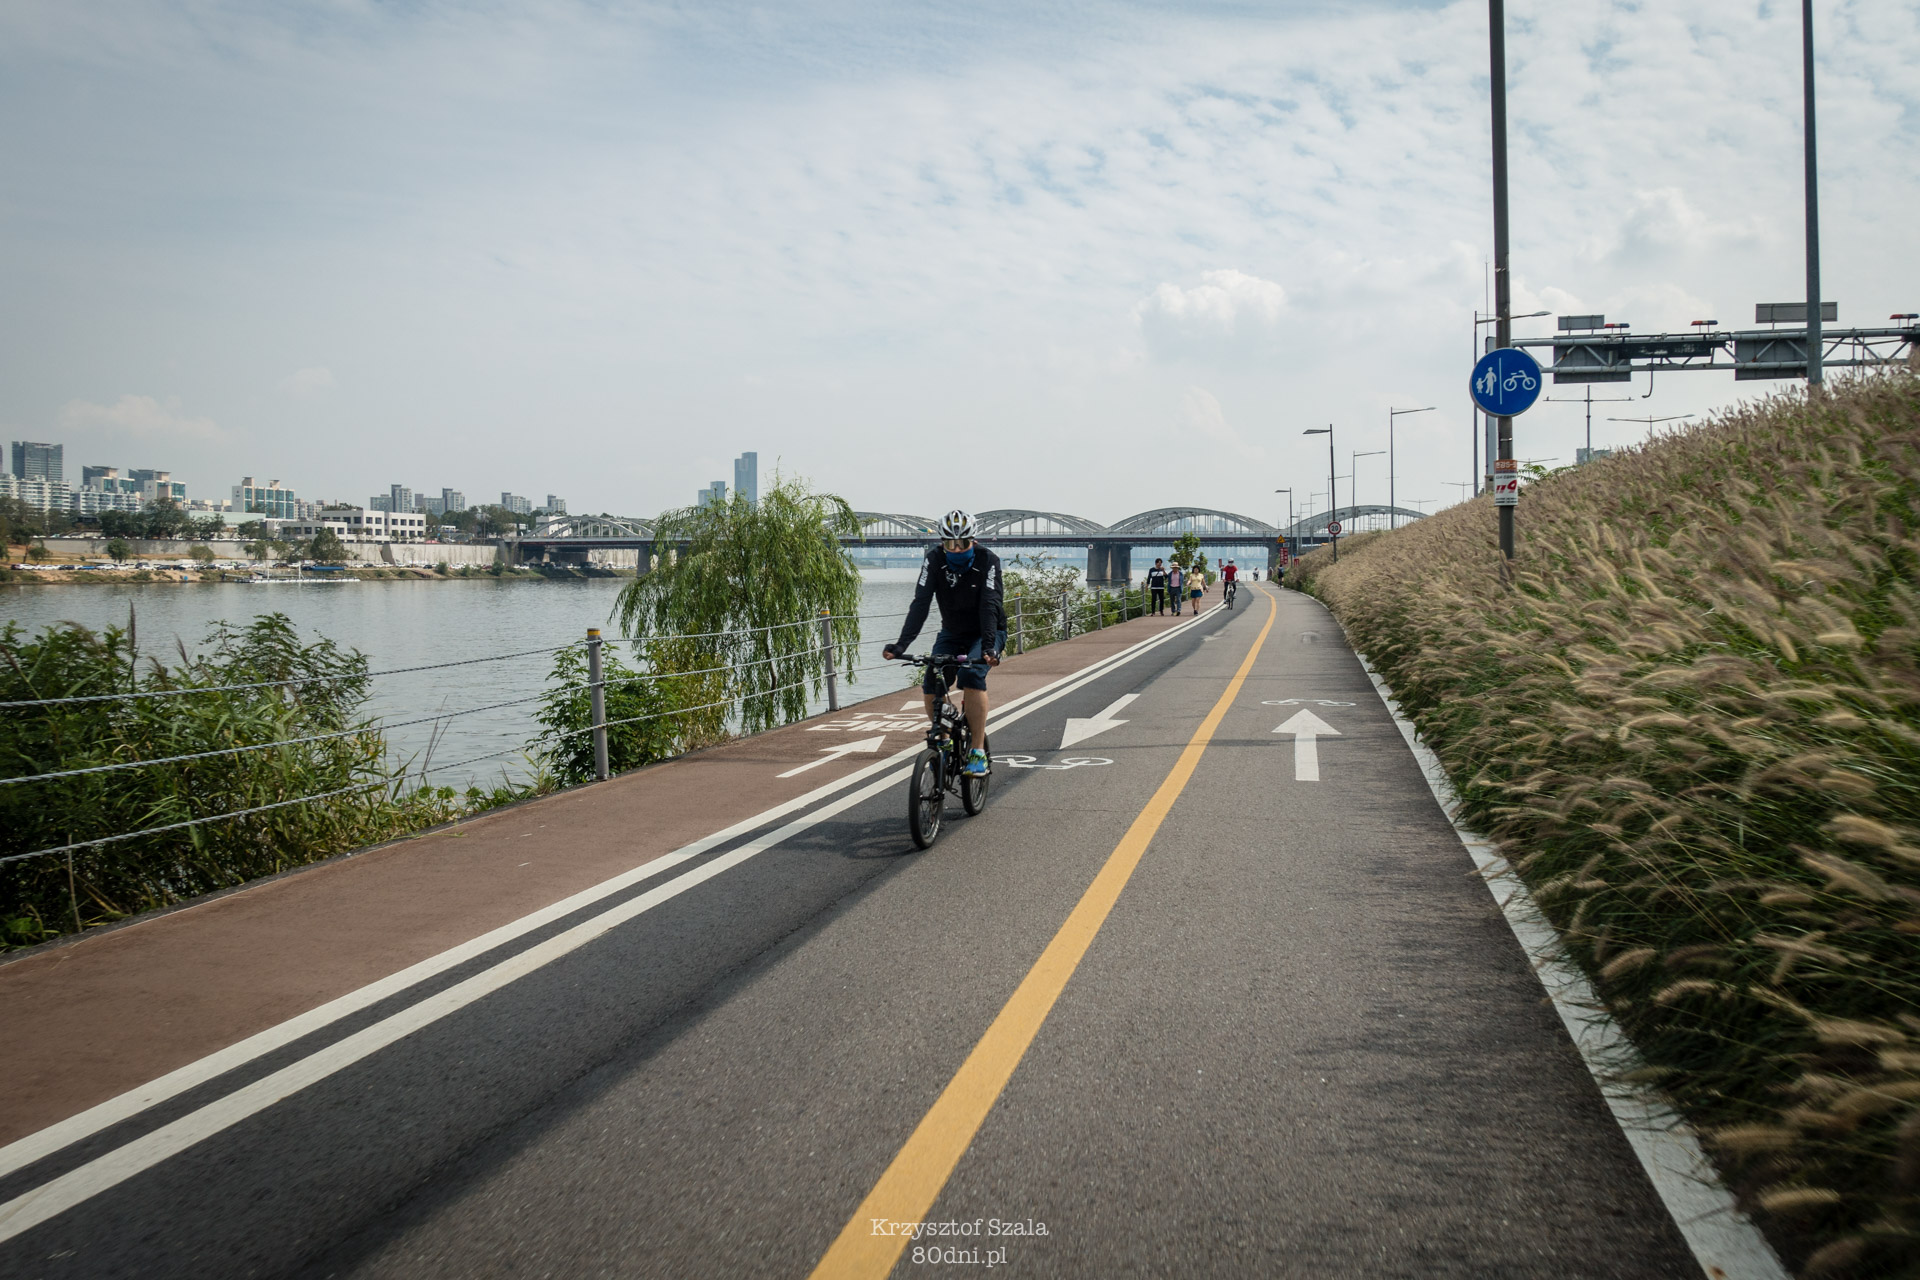 Infrastruktura rowerowa wzdłuż rzeki jest rewelacyjna!